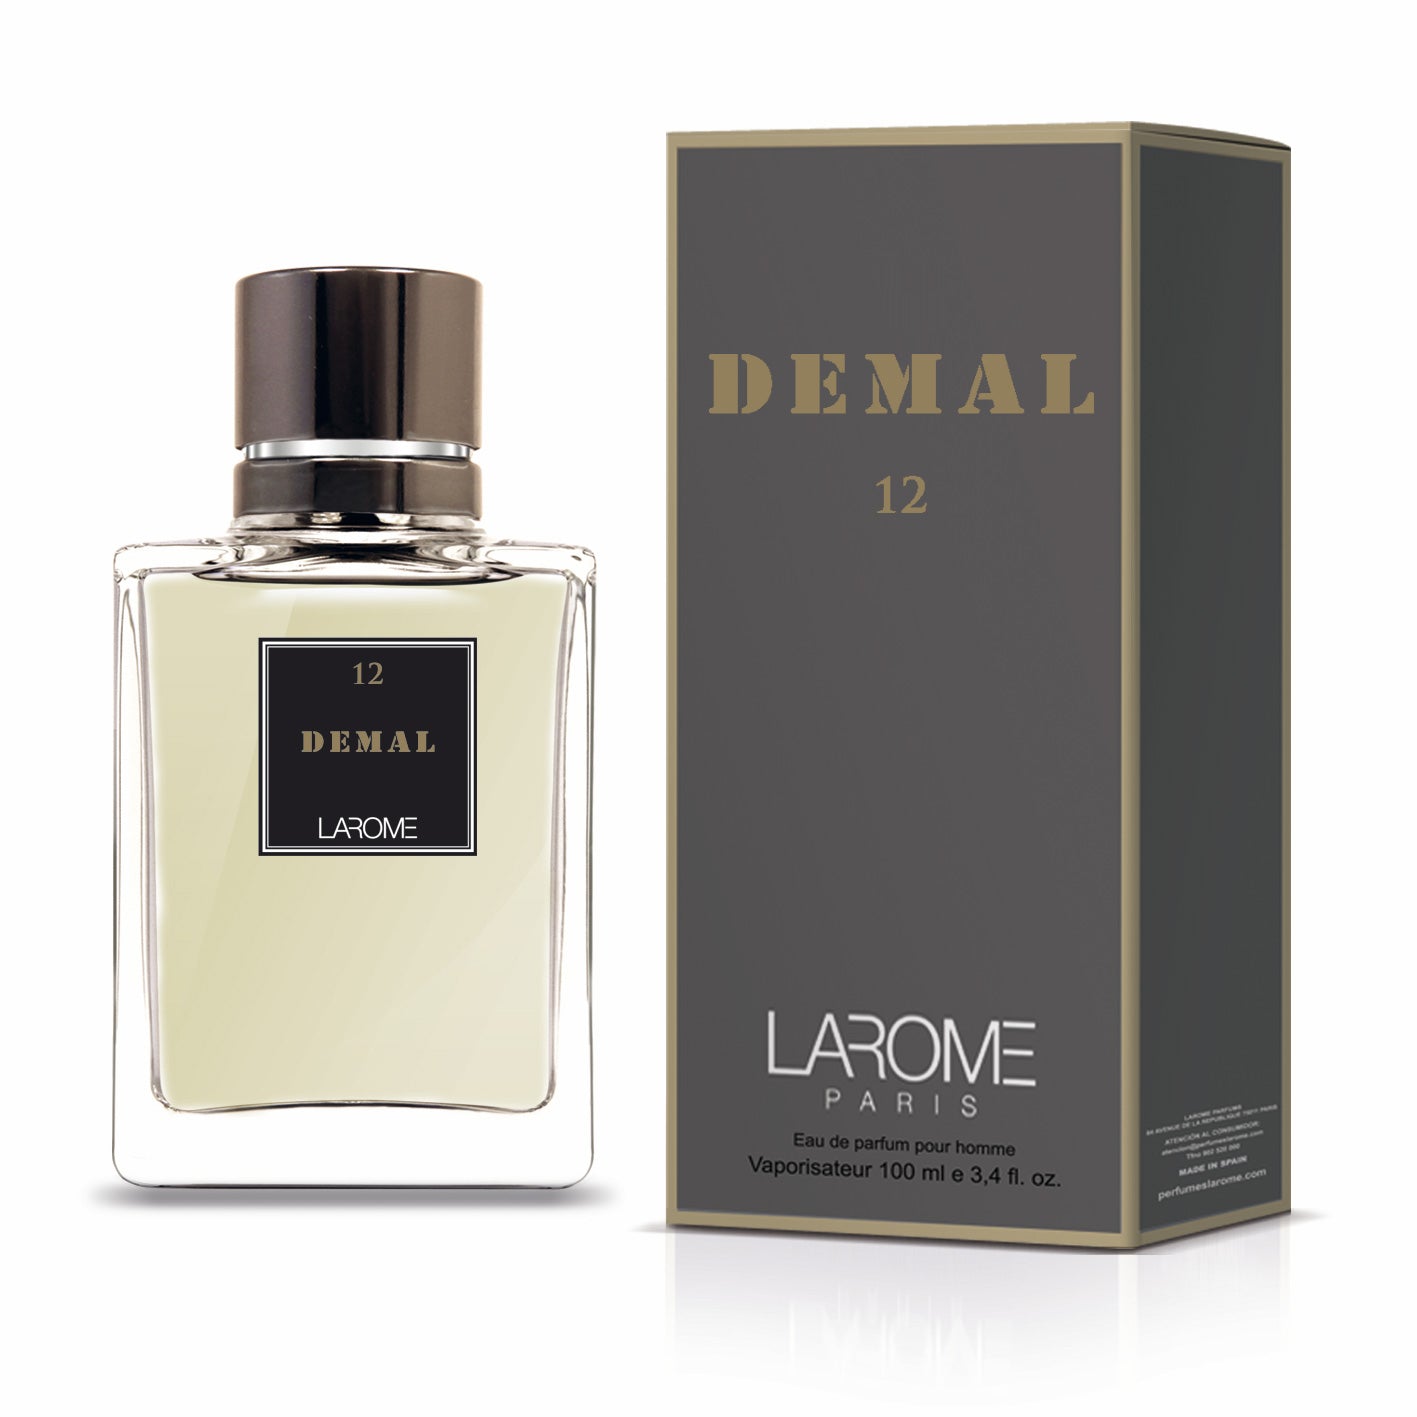 Demal 12M by Larome geïnspireerd door Le Male